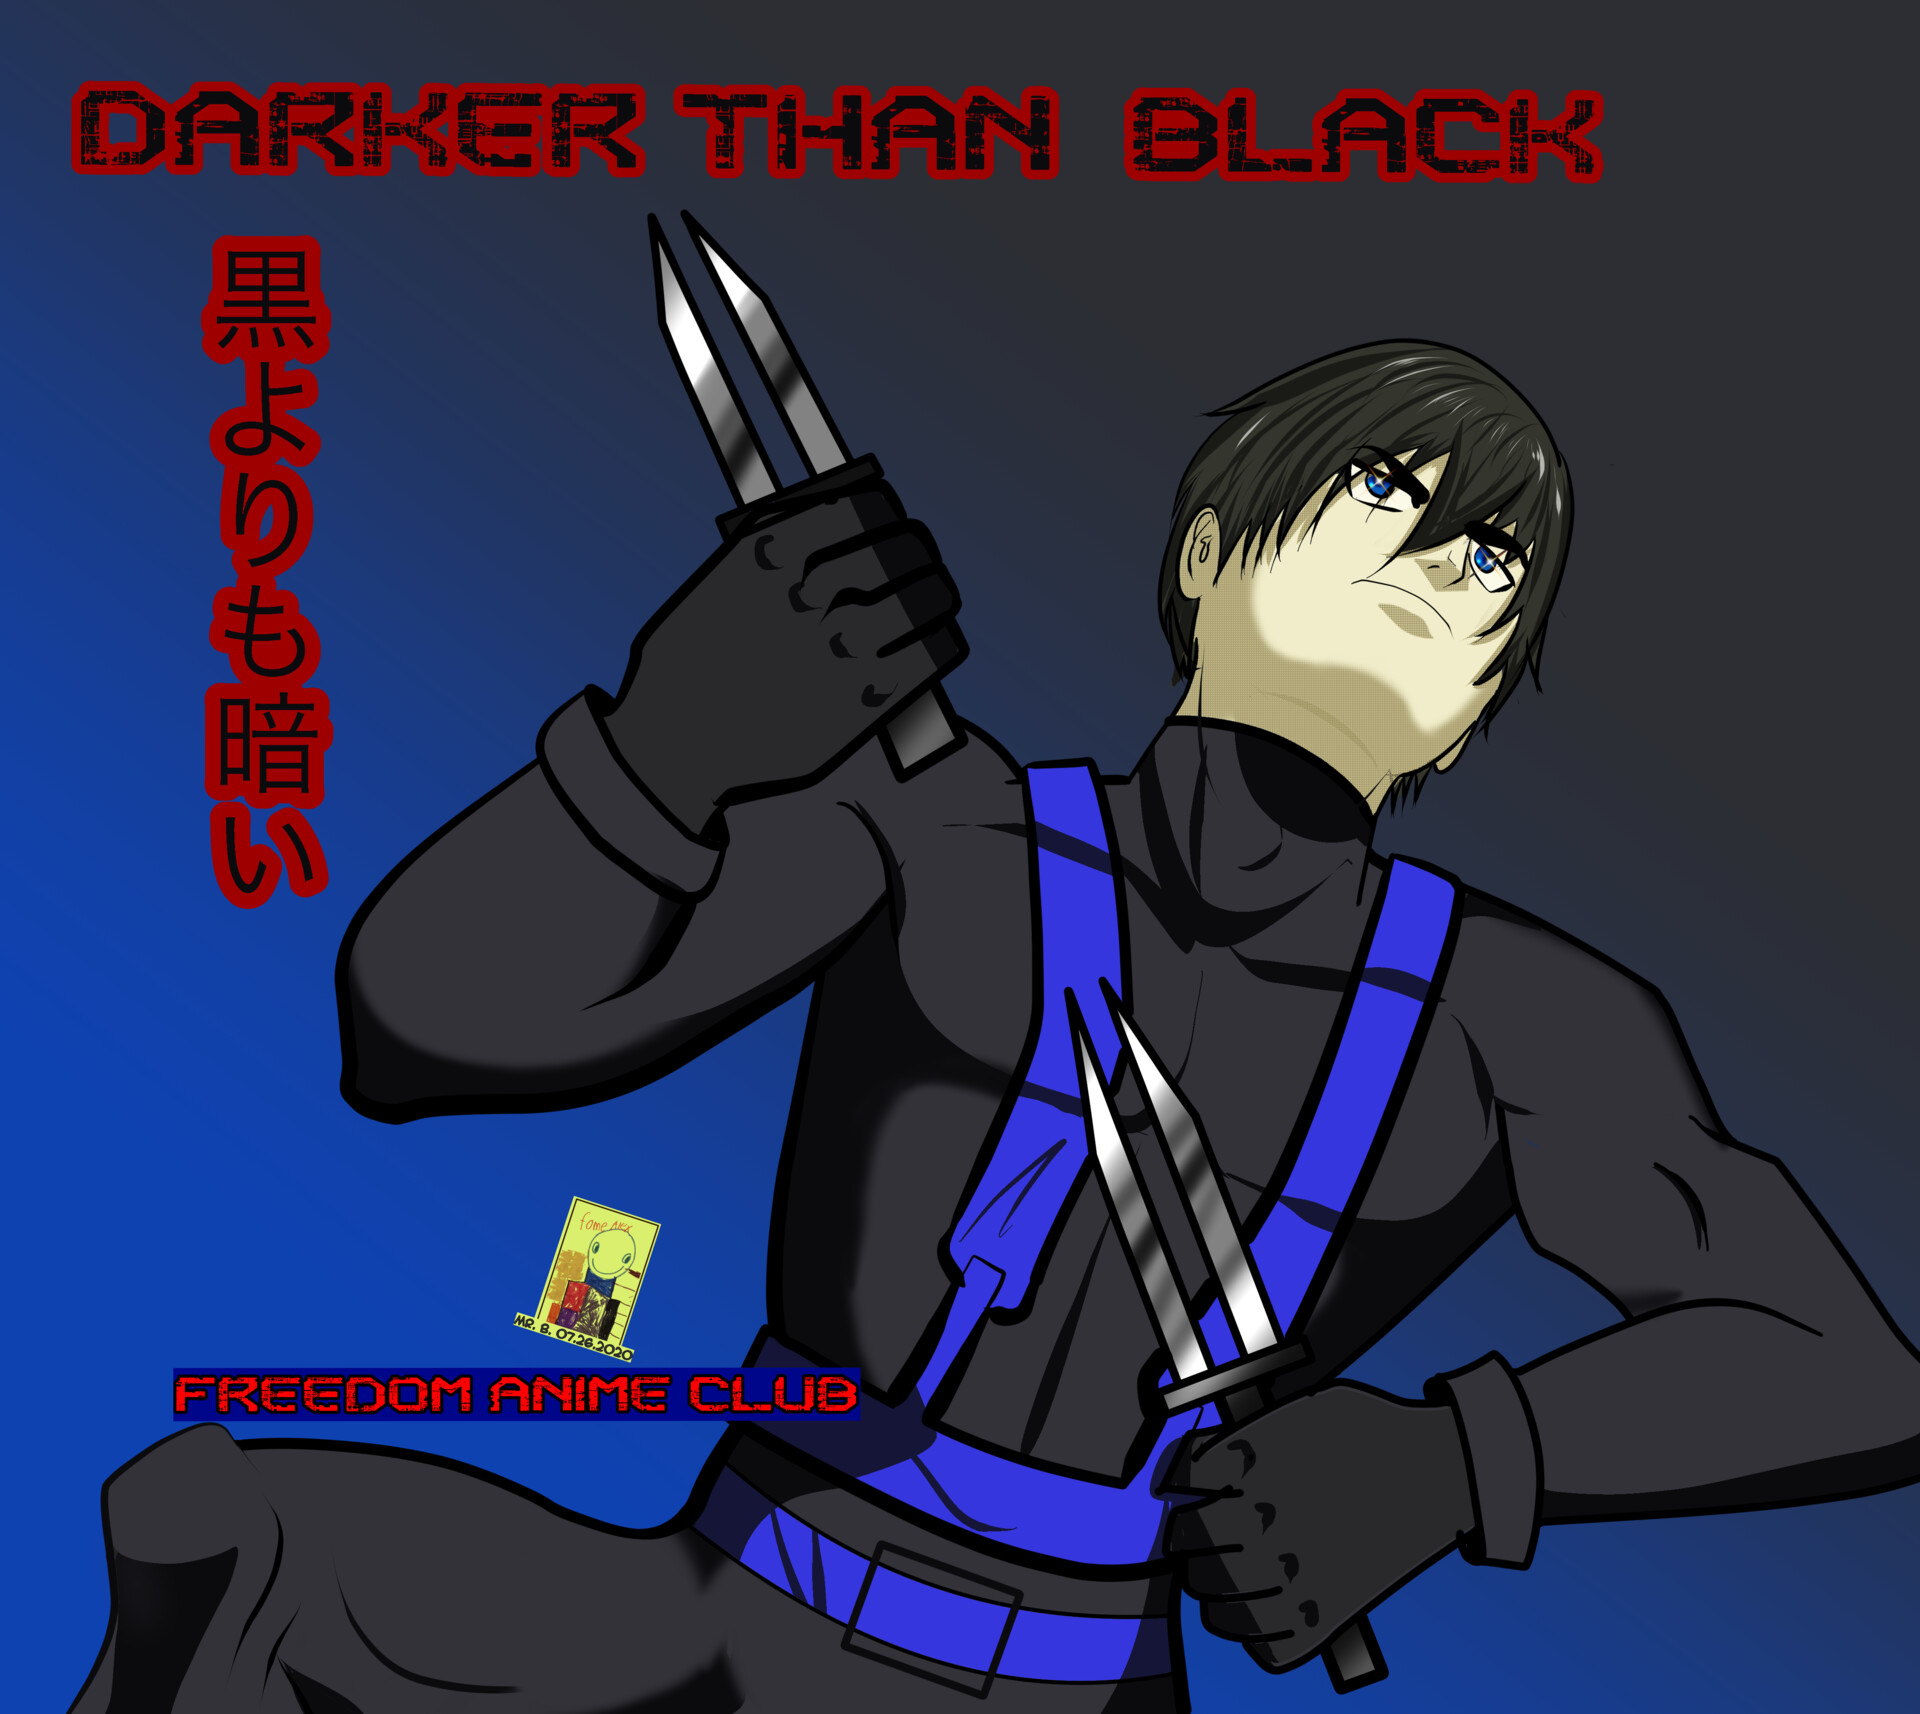 Hei Darker Than Black, manga, hei, darker than black, anime, HD